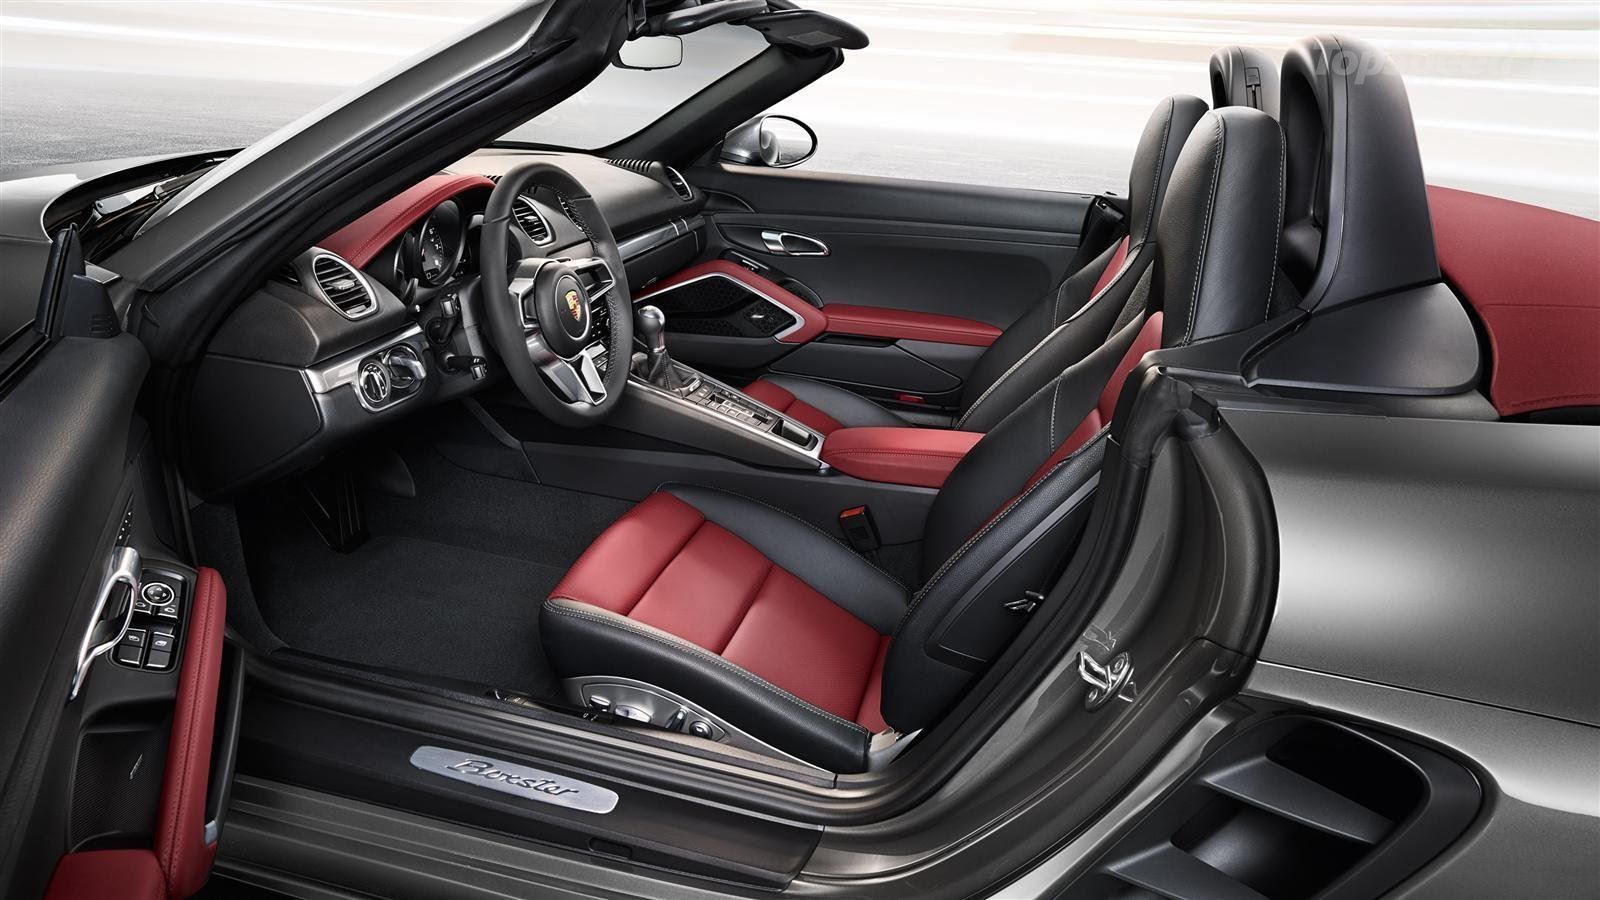  التصميم الداخلي للسيارة بورش بوكستر 718 موديل 2017 